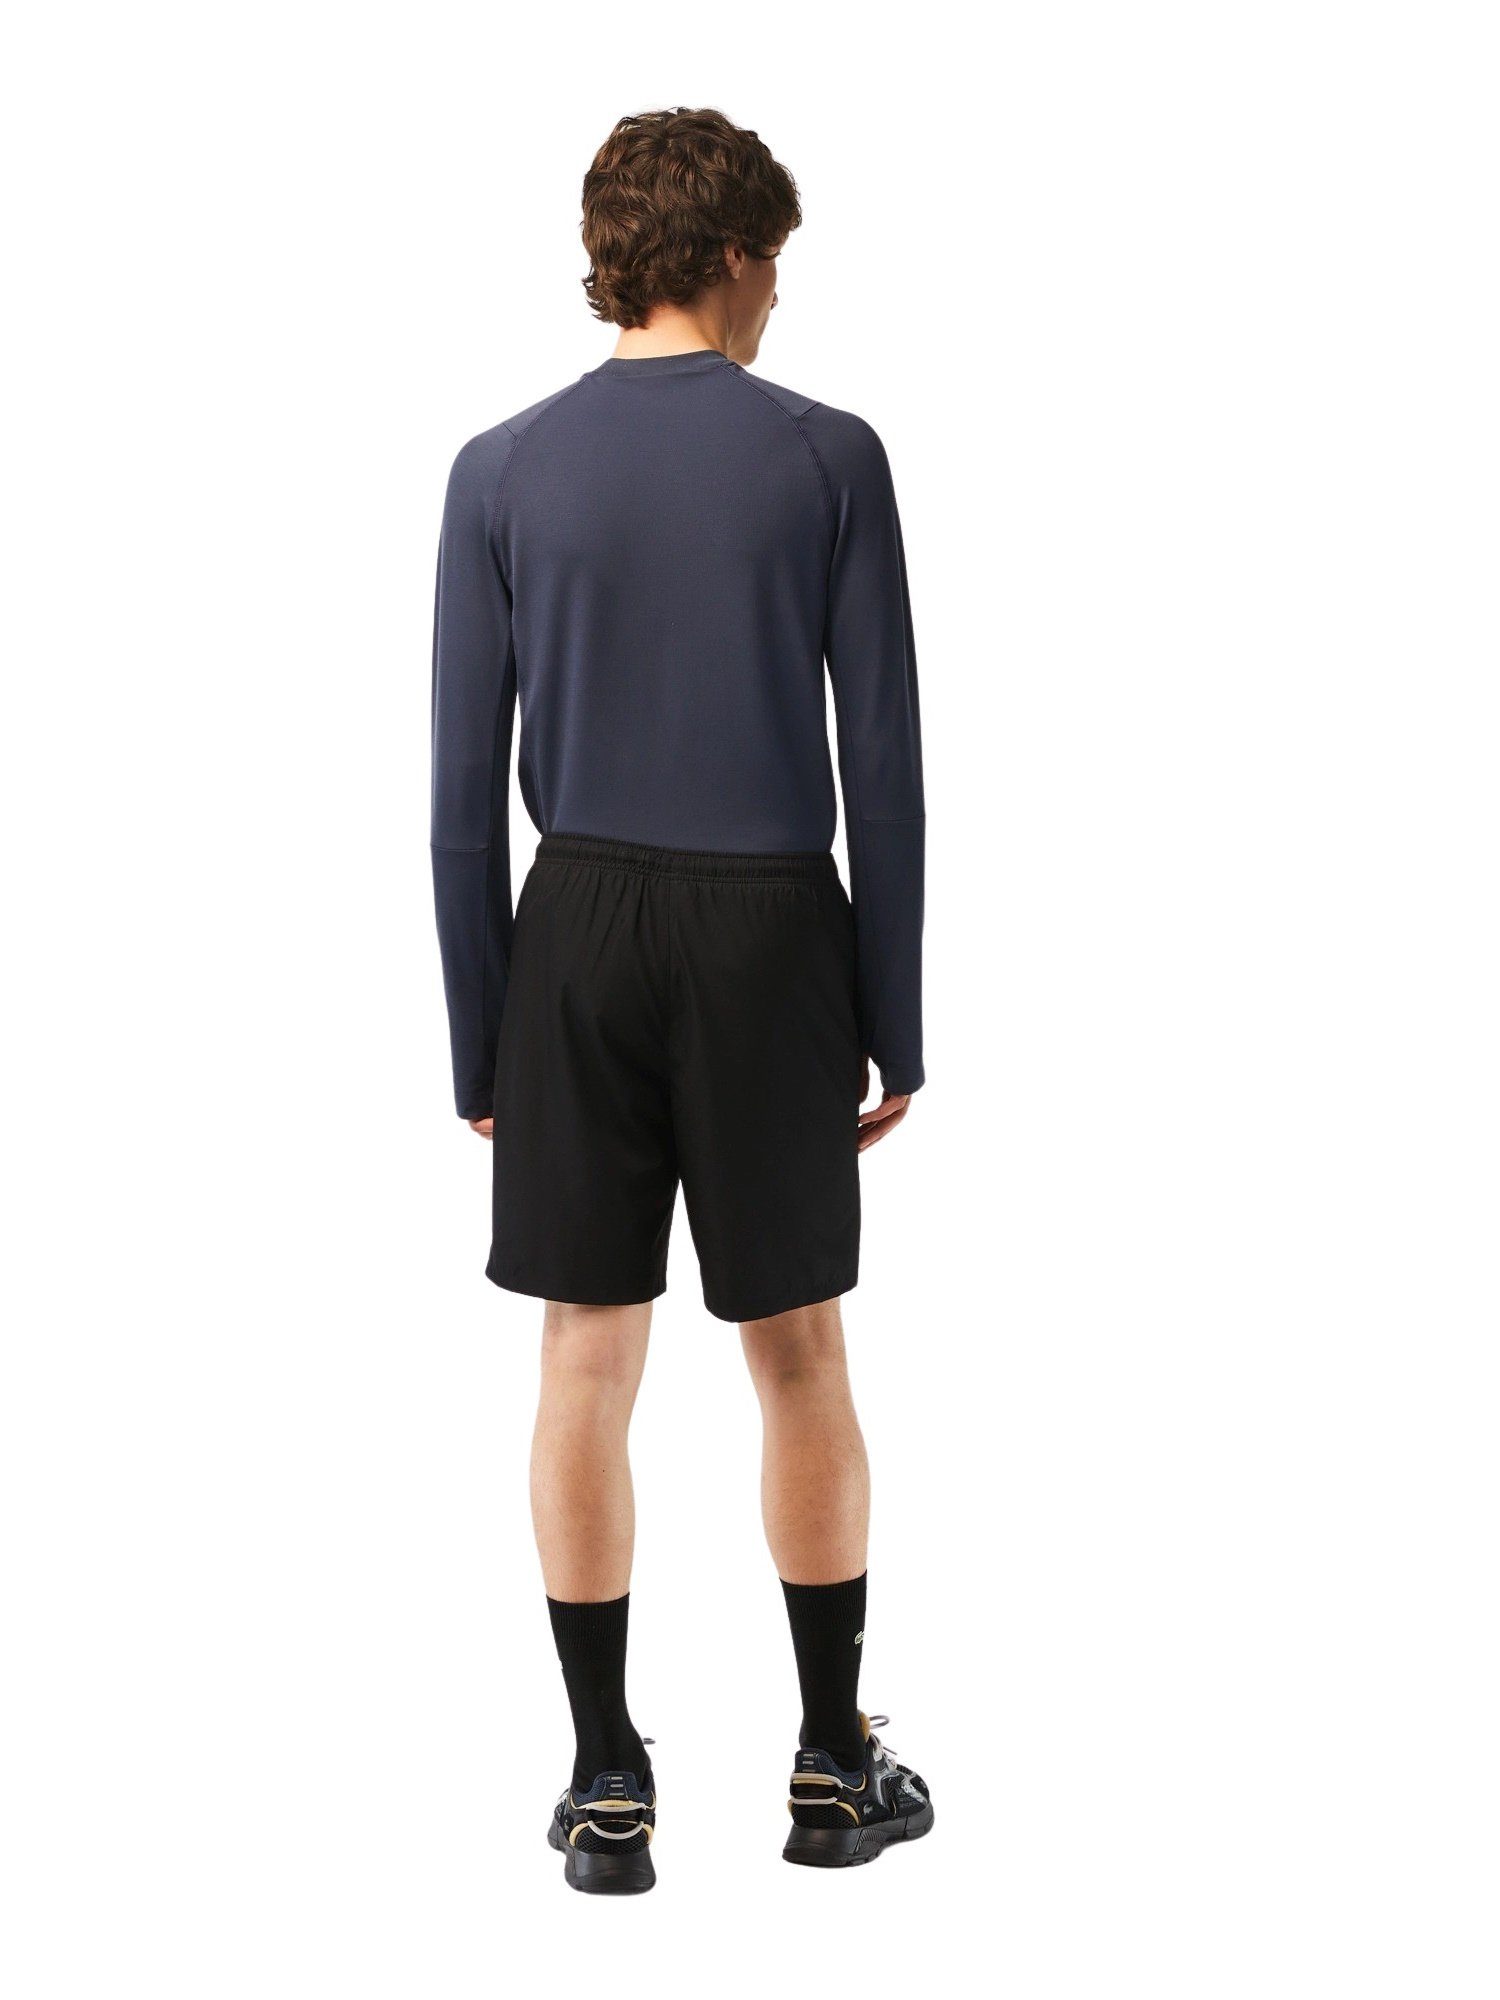 Lacoste Sweatshorts Hose Shorts mit elastischem Tunnelzugbund schwarz